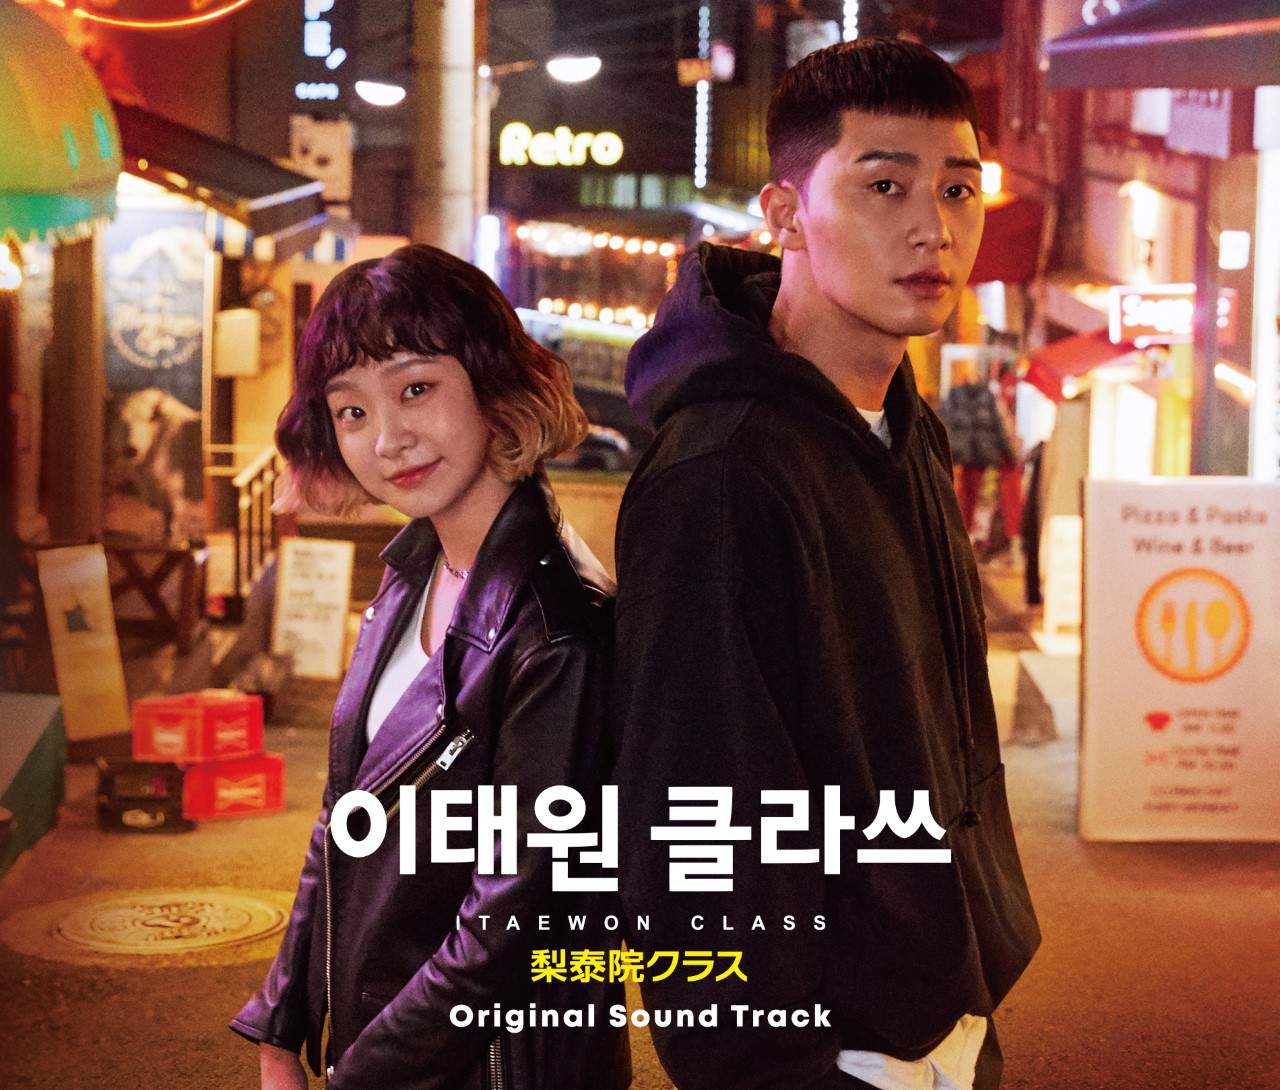 「人生のあとさき」韓国ドラマの最新作！人生最後の瞬間にも輝ける存在になるために奮闘する、感動のヒューマンドラマ！